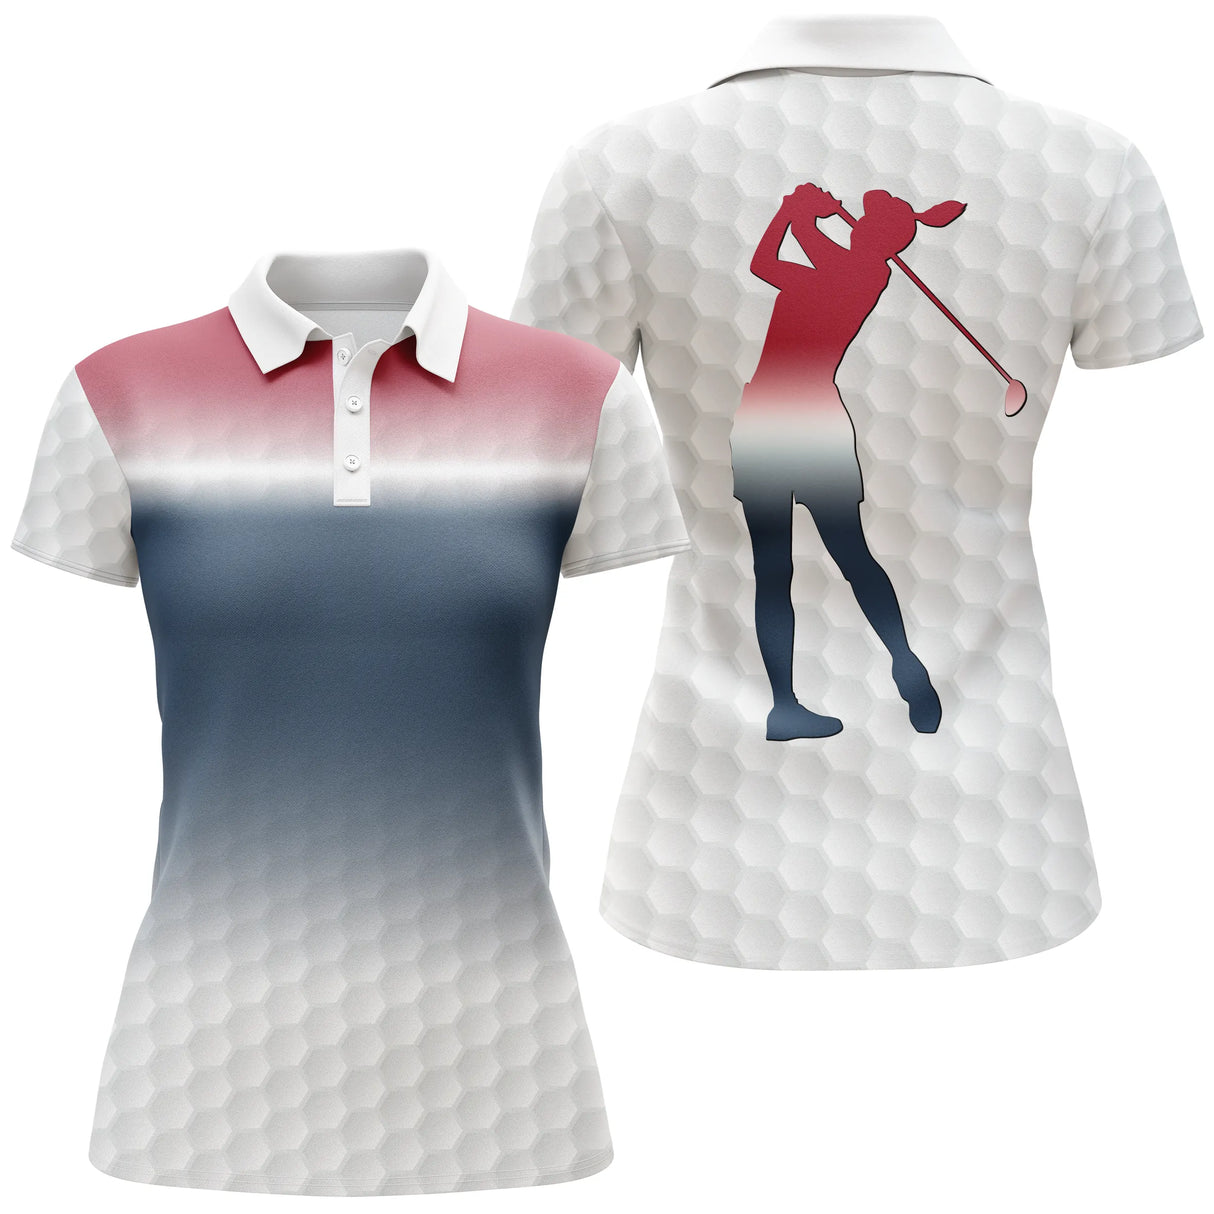 Chiptshirts - Polo de Golf, Regalo Ideal para Aficionados al Golf, Polo Deportivo para Hombre y Mujer, Patrones de Pelotas de Golf, Golfista, Golfista - CTS26052207